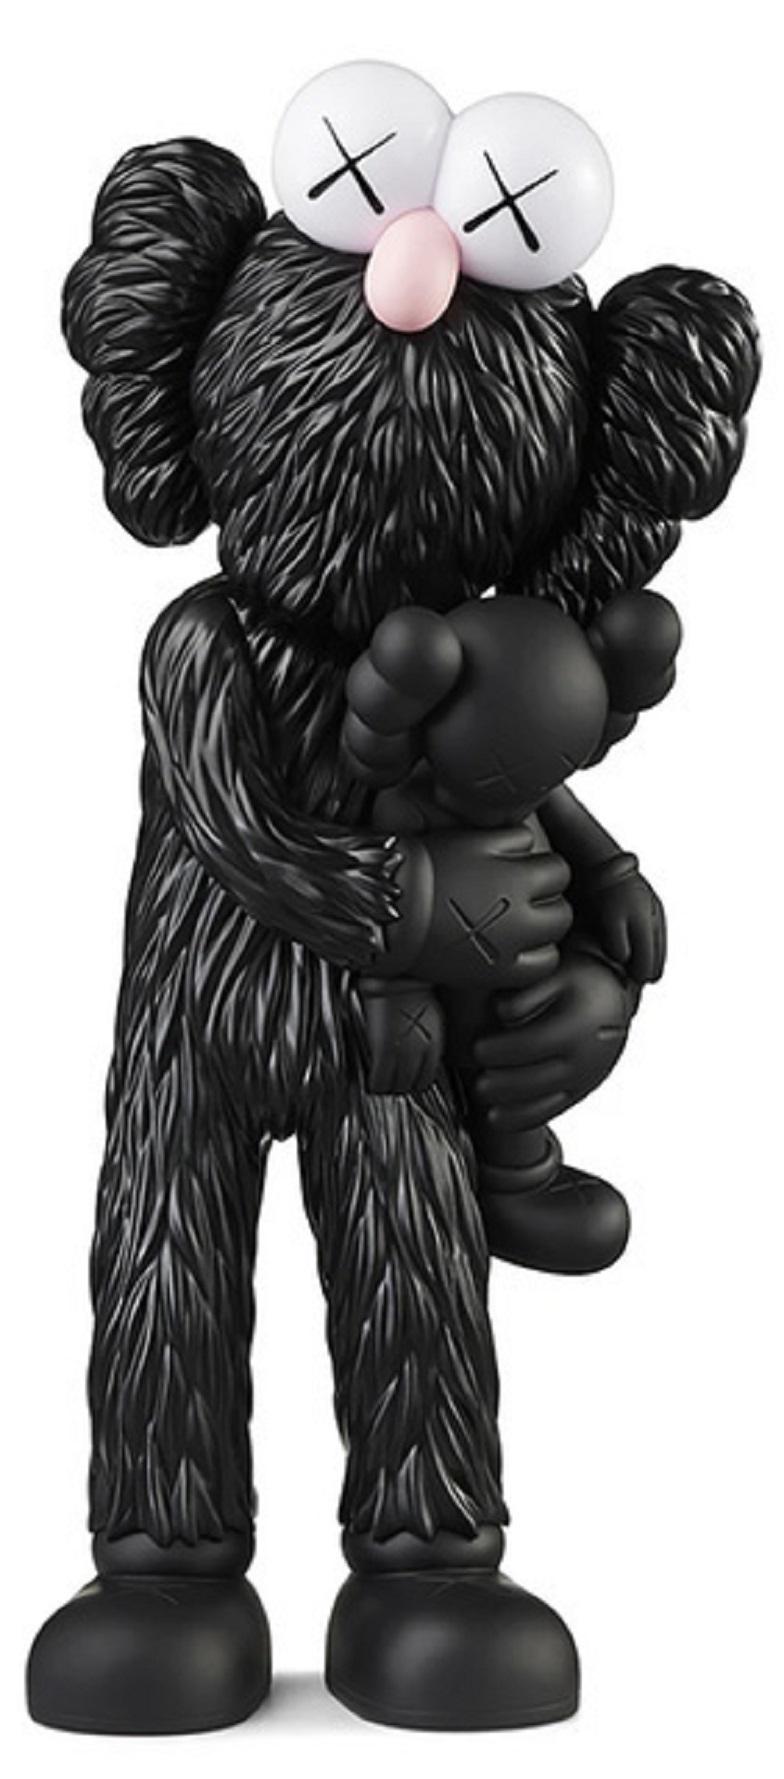 Take (Black) - Sculpture by KAWS